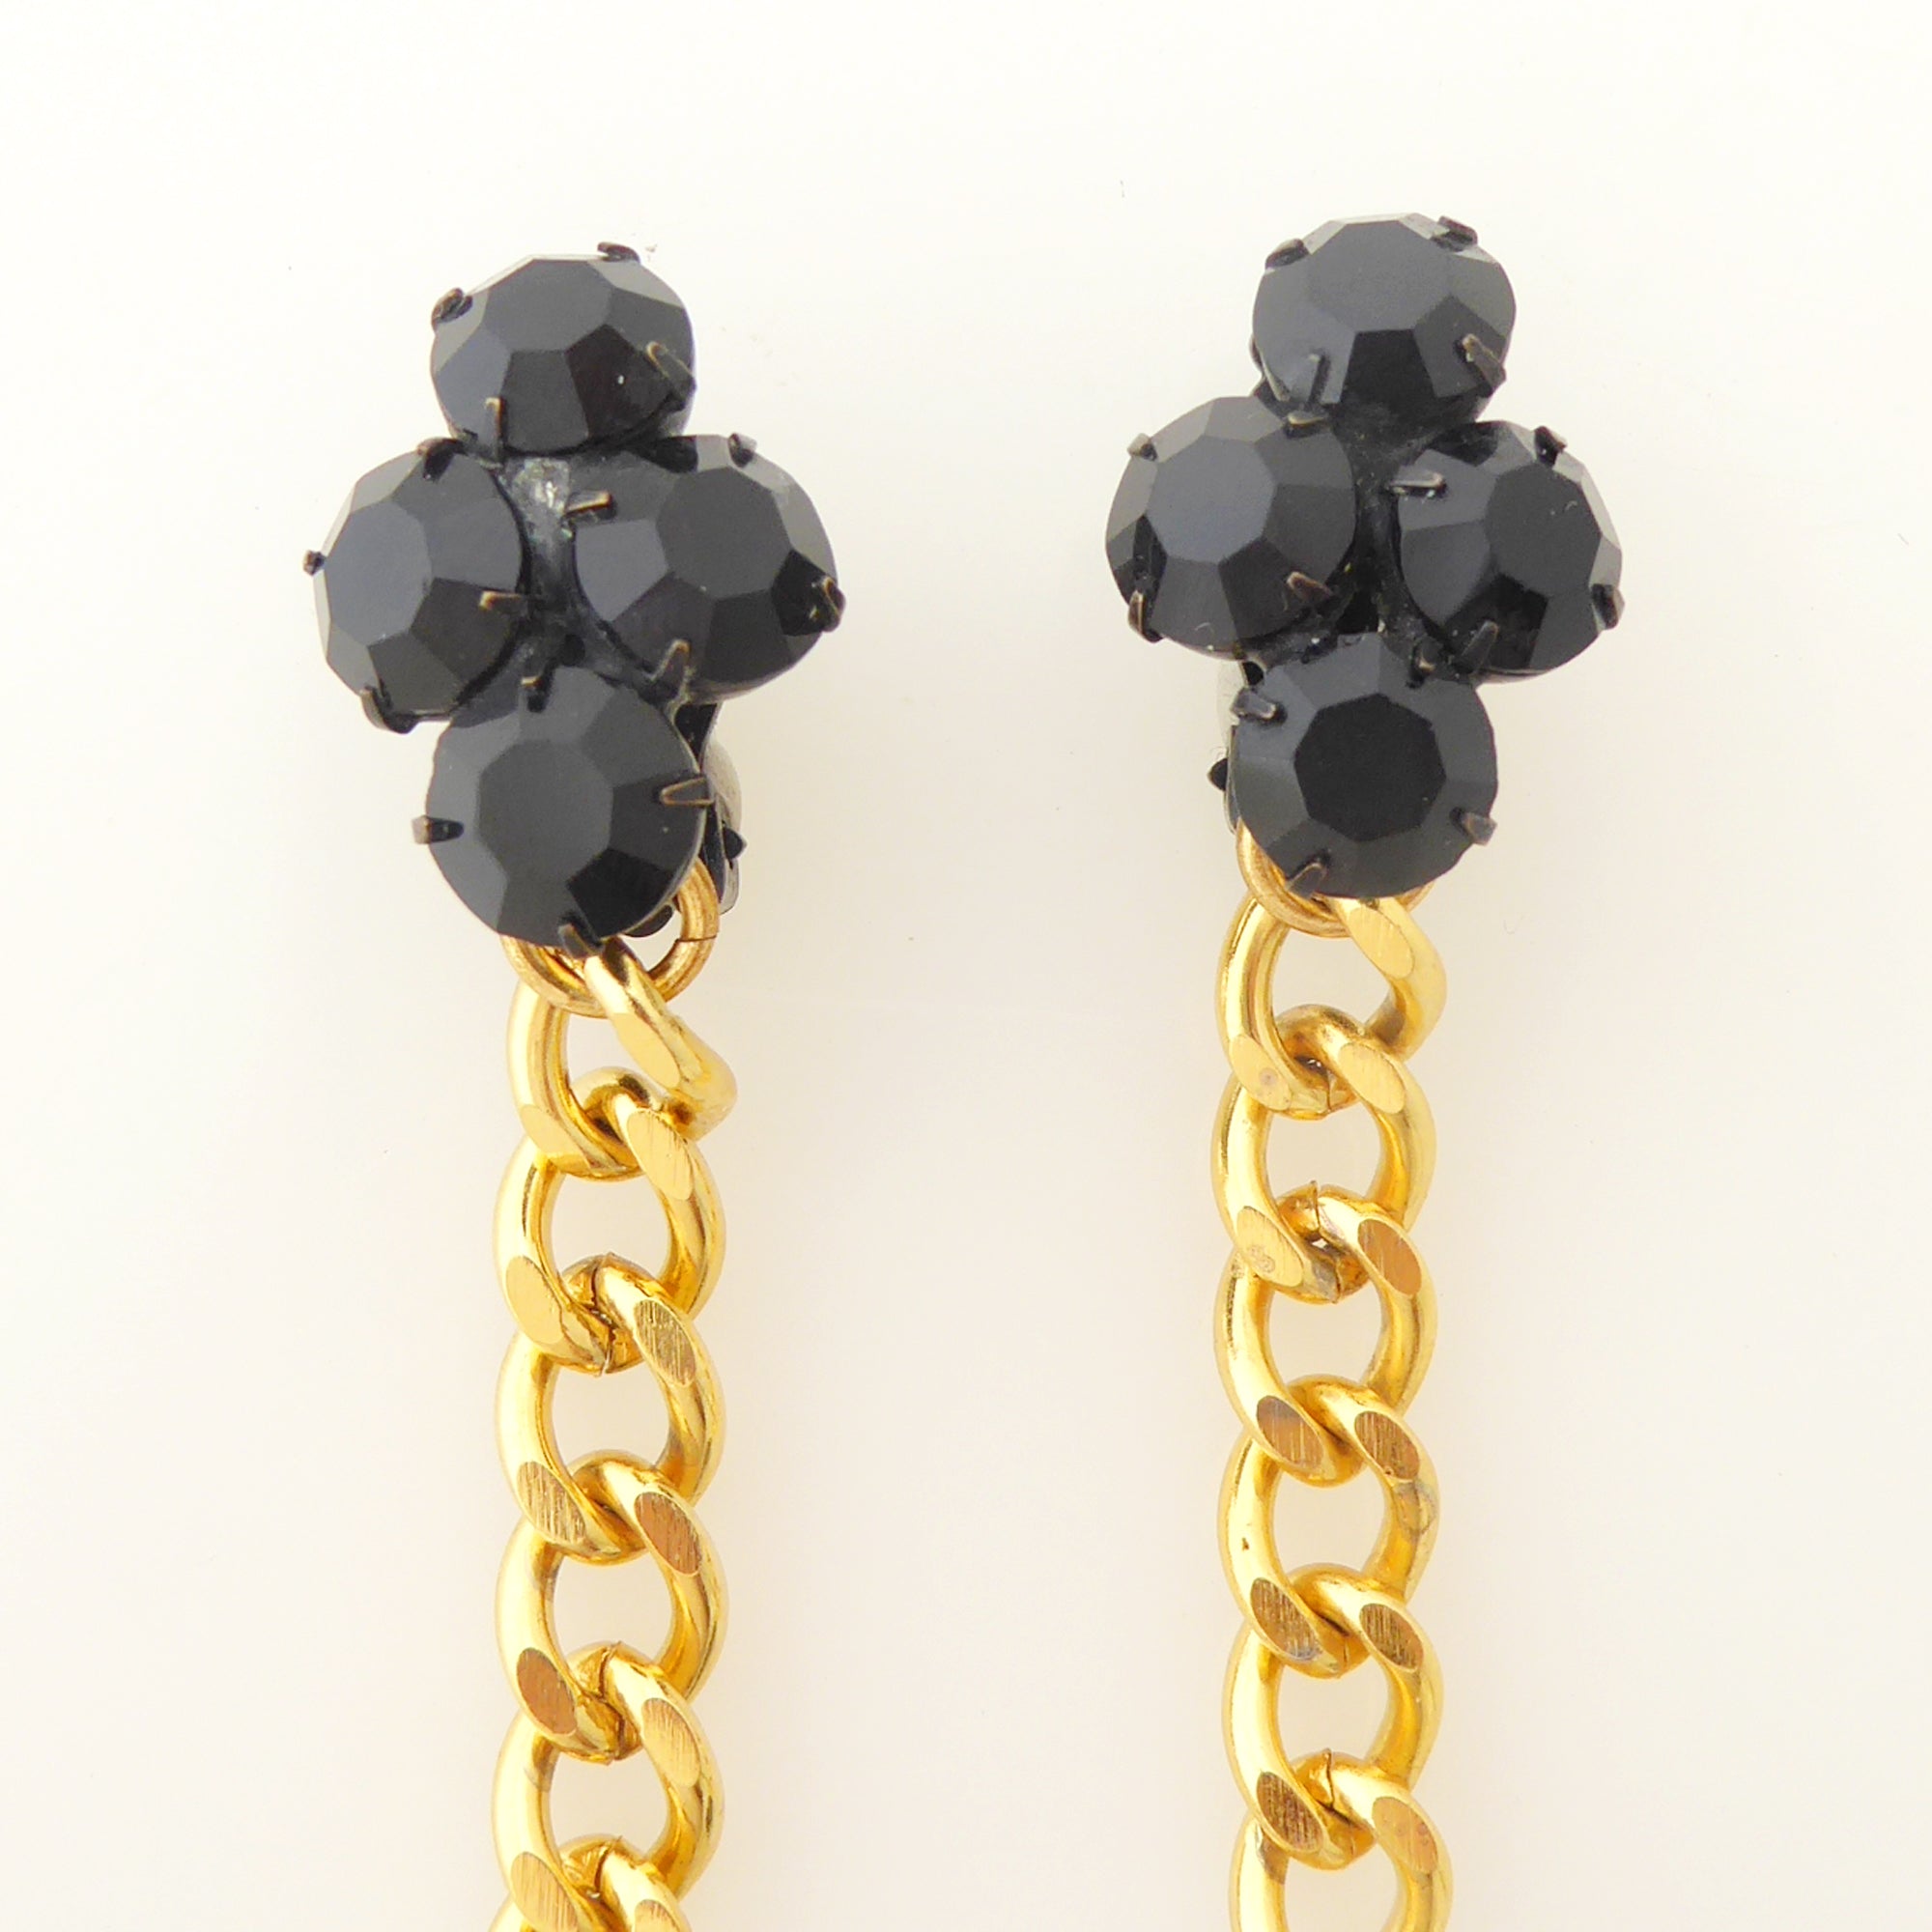    Black onyx teardrop earrings by Jenny Dayco 4